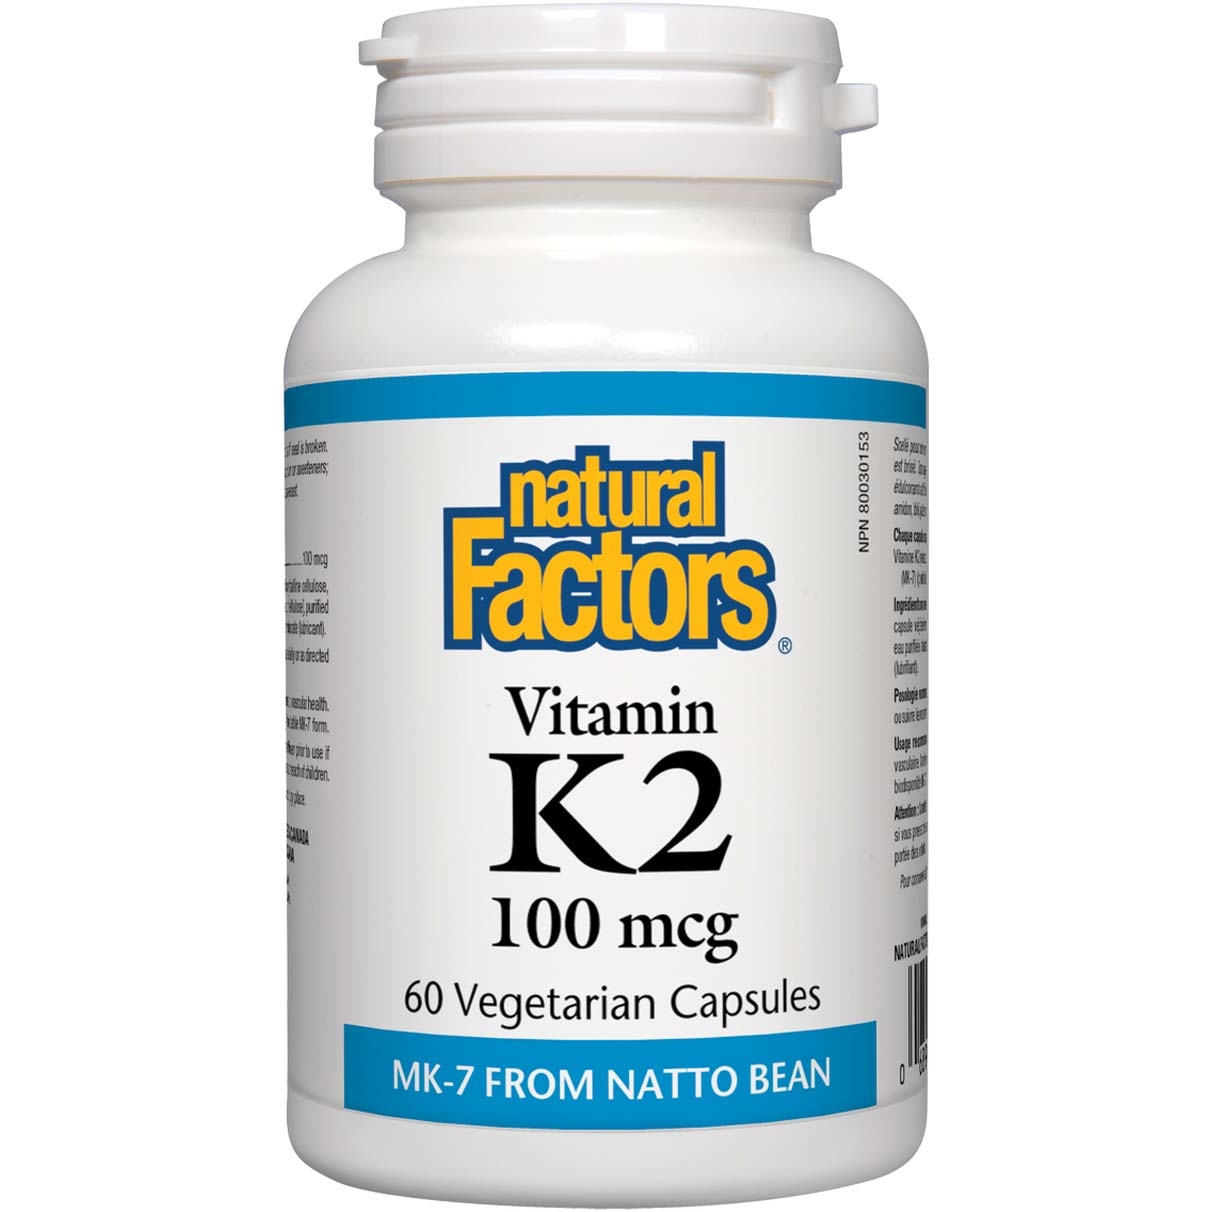 ناتشورال فاكتورز فيتامين K2, 100 مكجم, 60 كبسولات نباتية